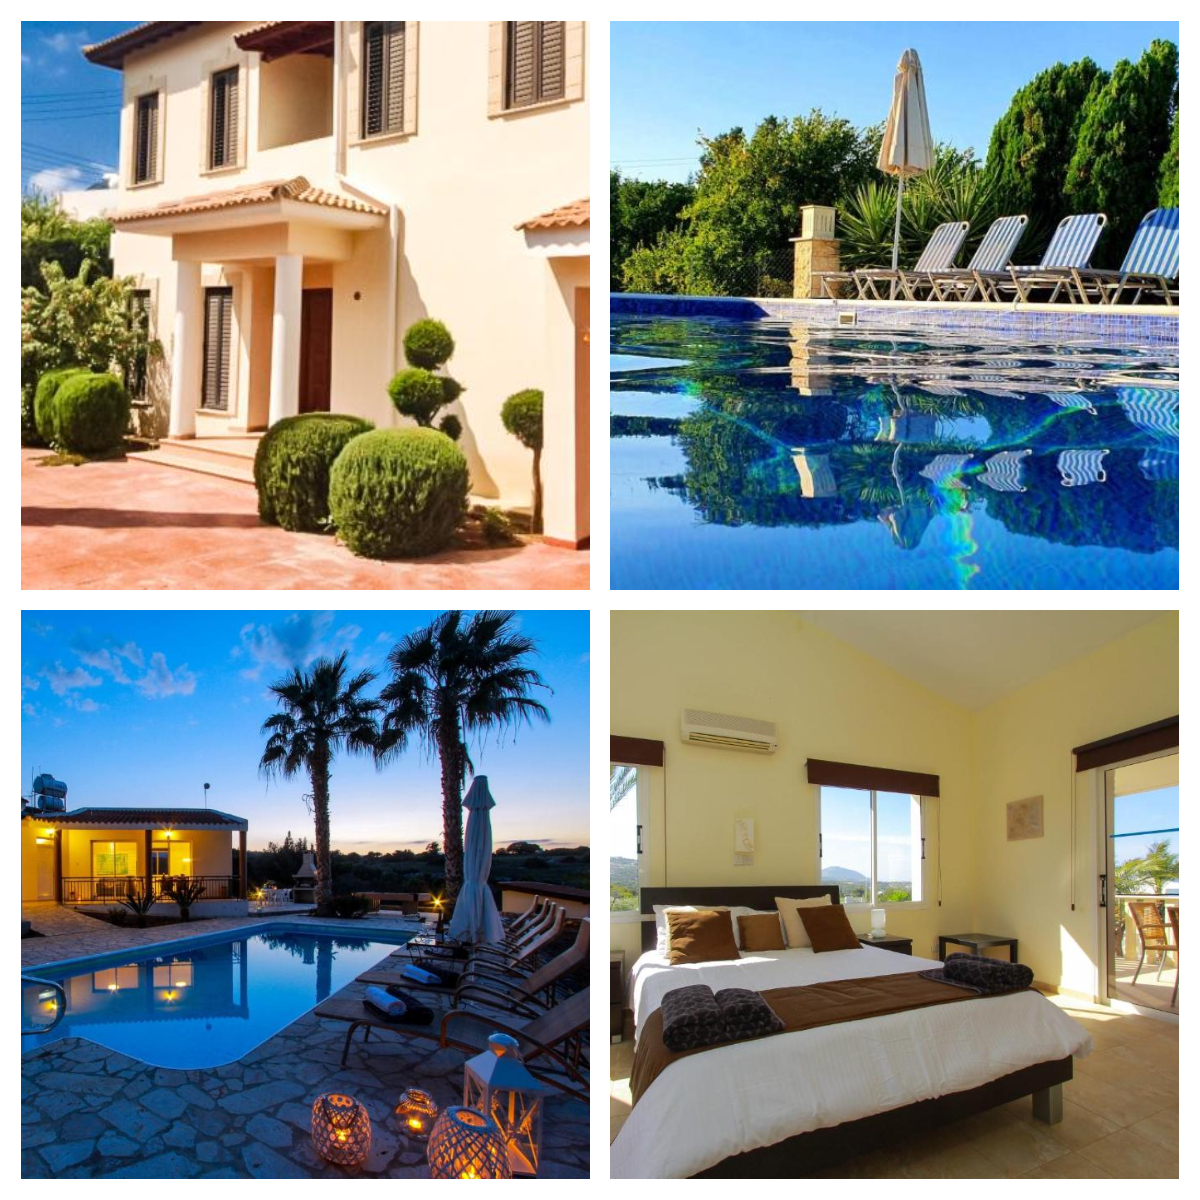 Theos Club Villas in Cyprus